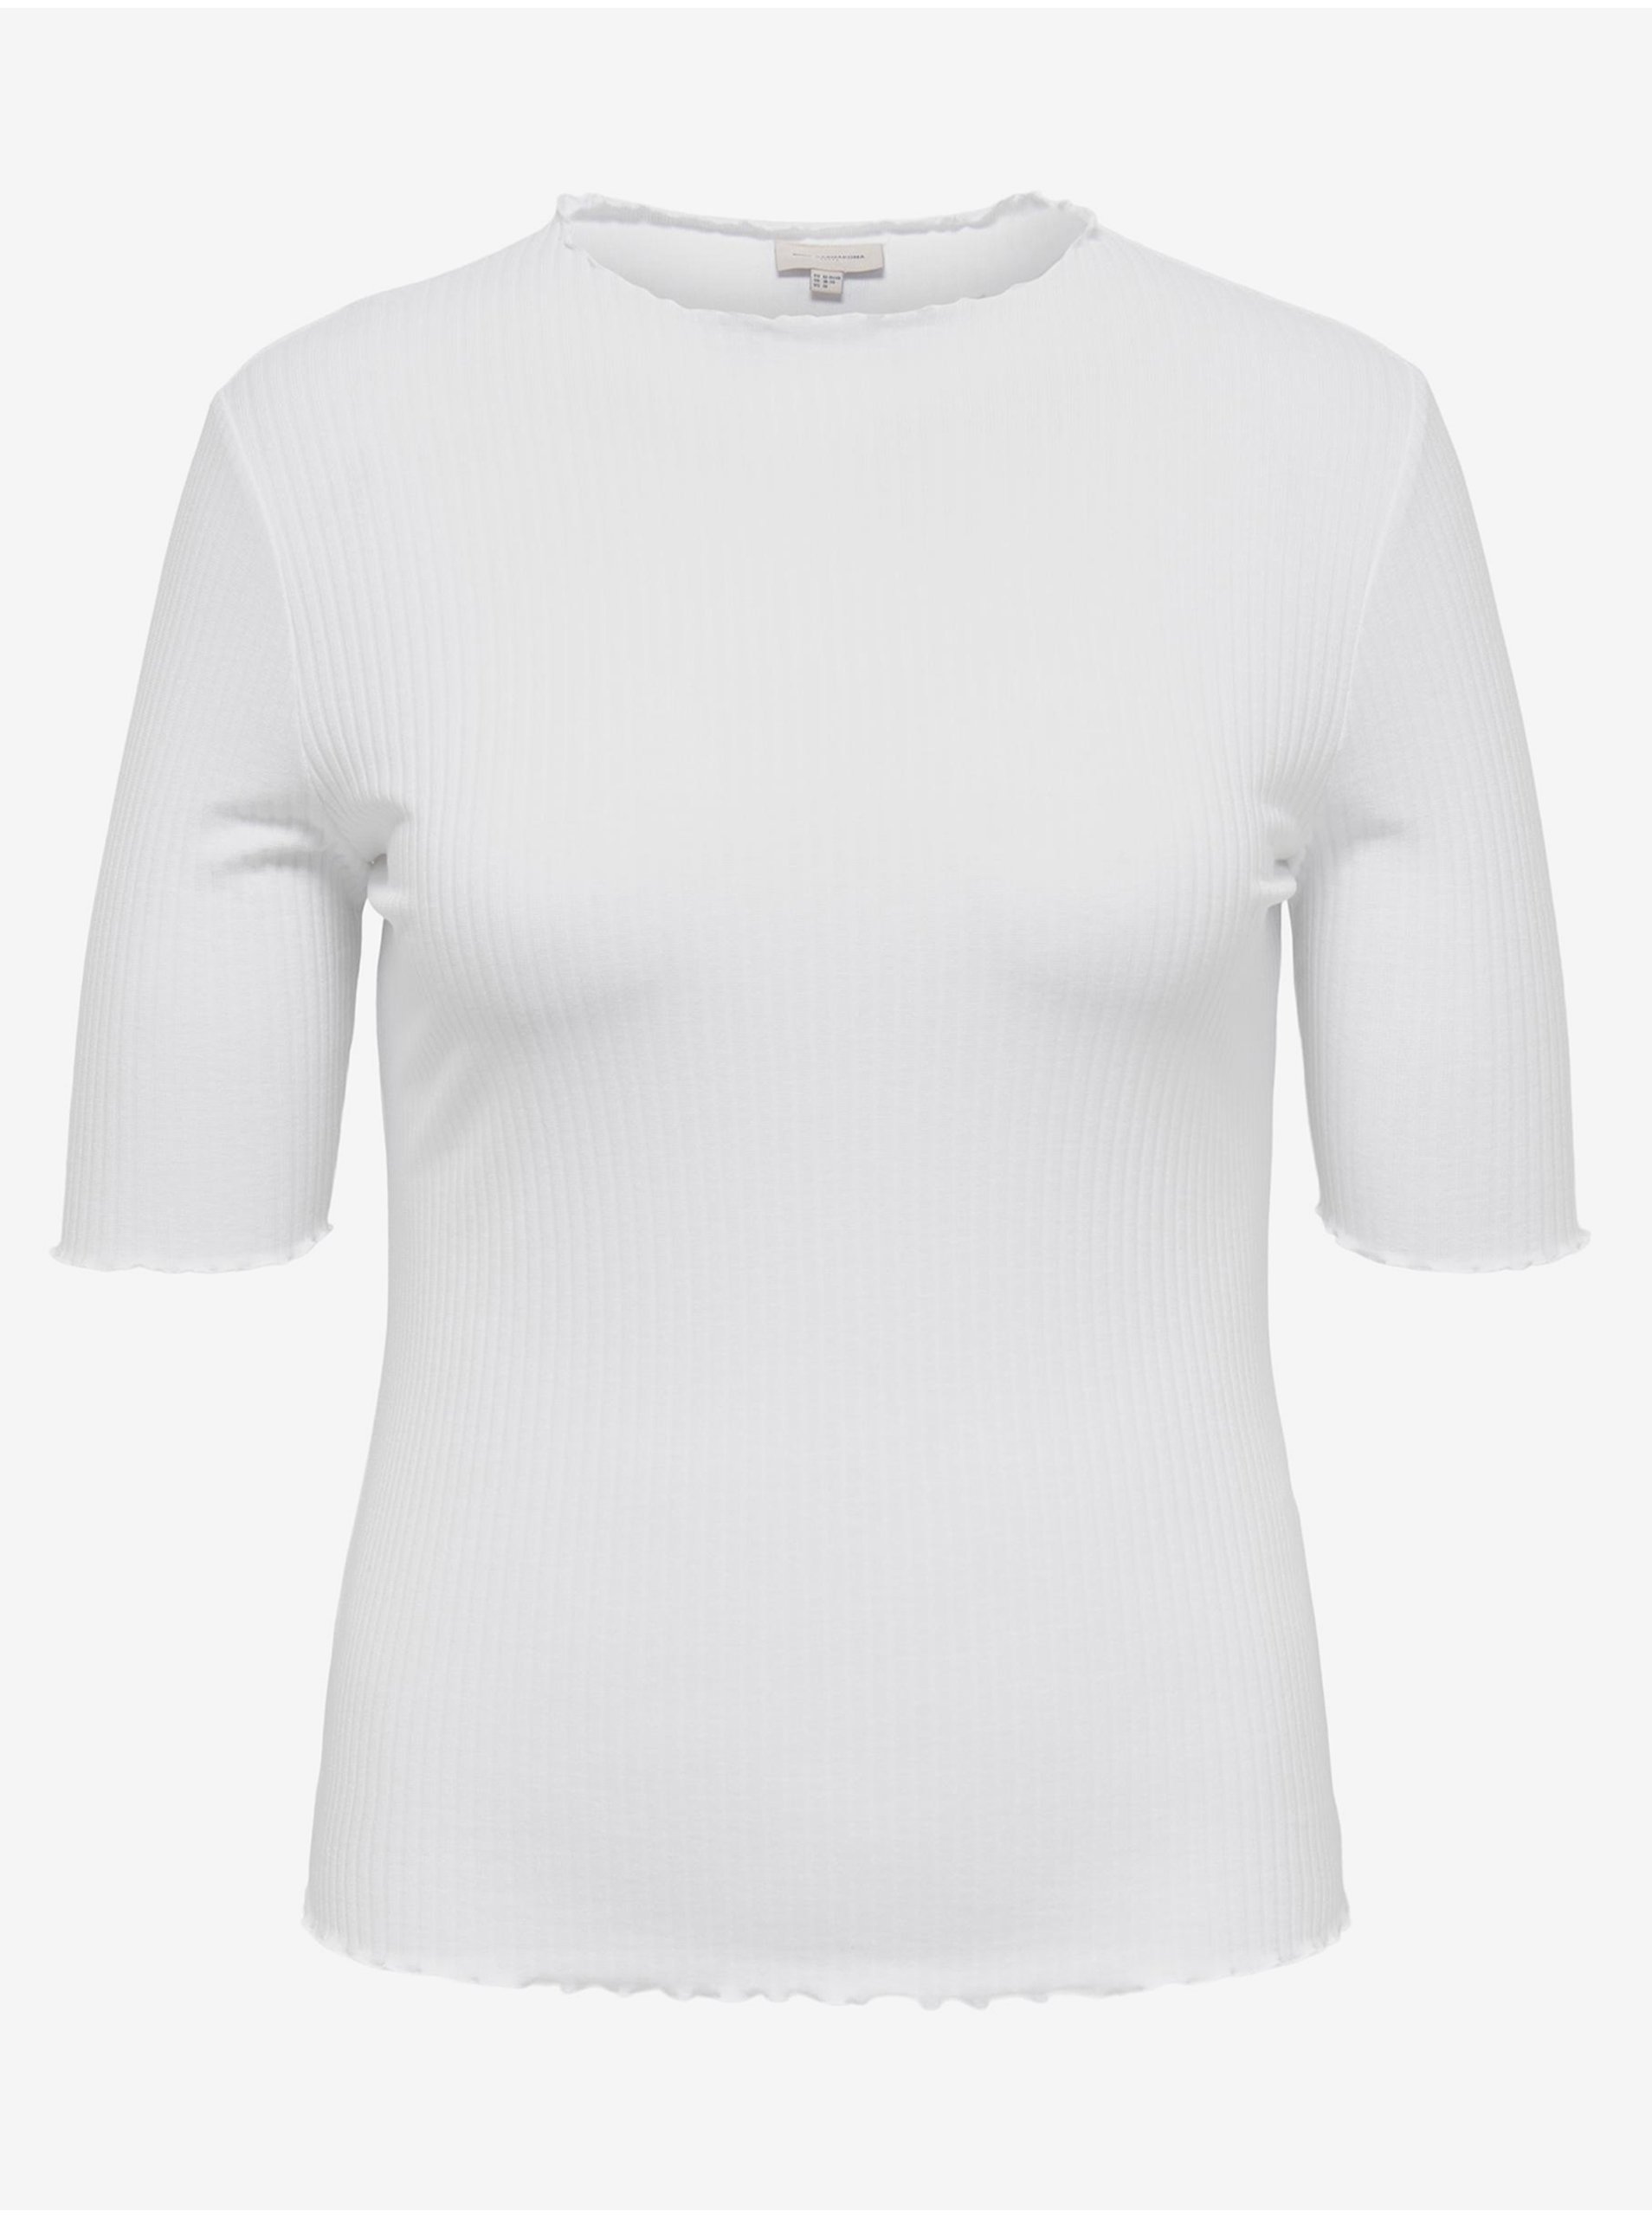 Lacno Biele dámske rebrované tričko ONLY CARMAKOMA Ally